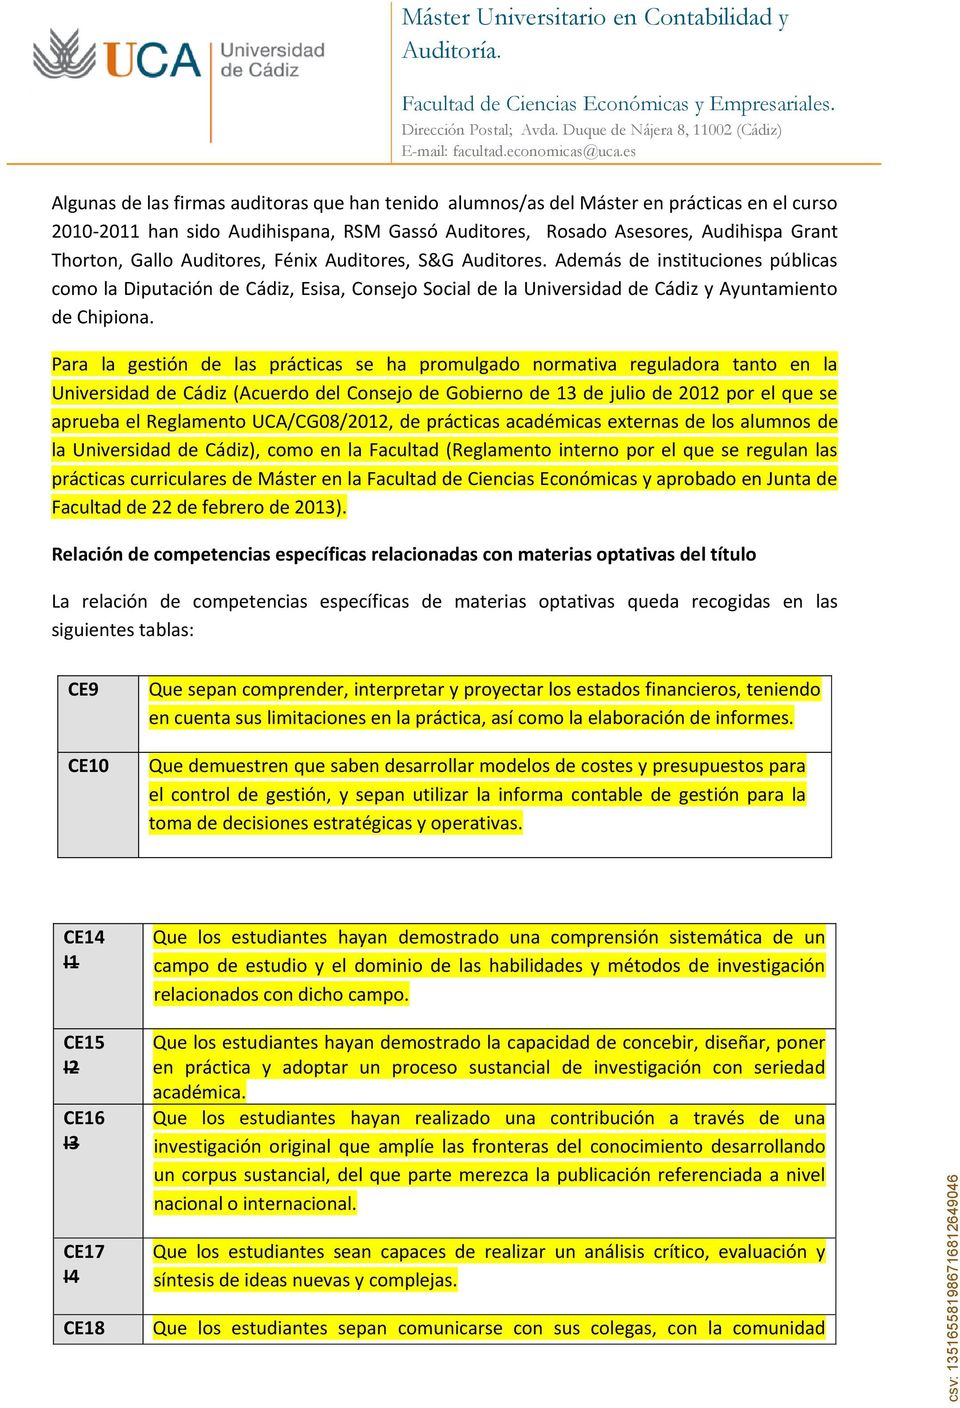 Para la gestión de las prácticas se ha promulgado normativa reguladora tanto en la Universidad de Cádiz (Acuerdo del Consejo de Gobierno de 13 de julio de 2012 por el que se aprueba el Reglamento